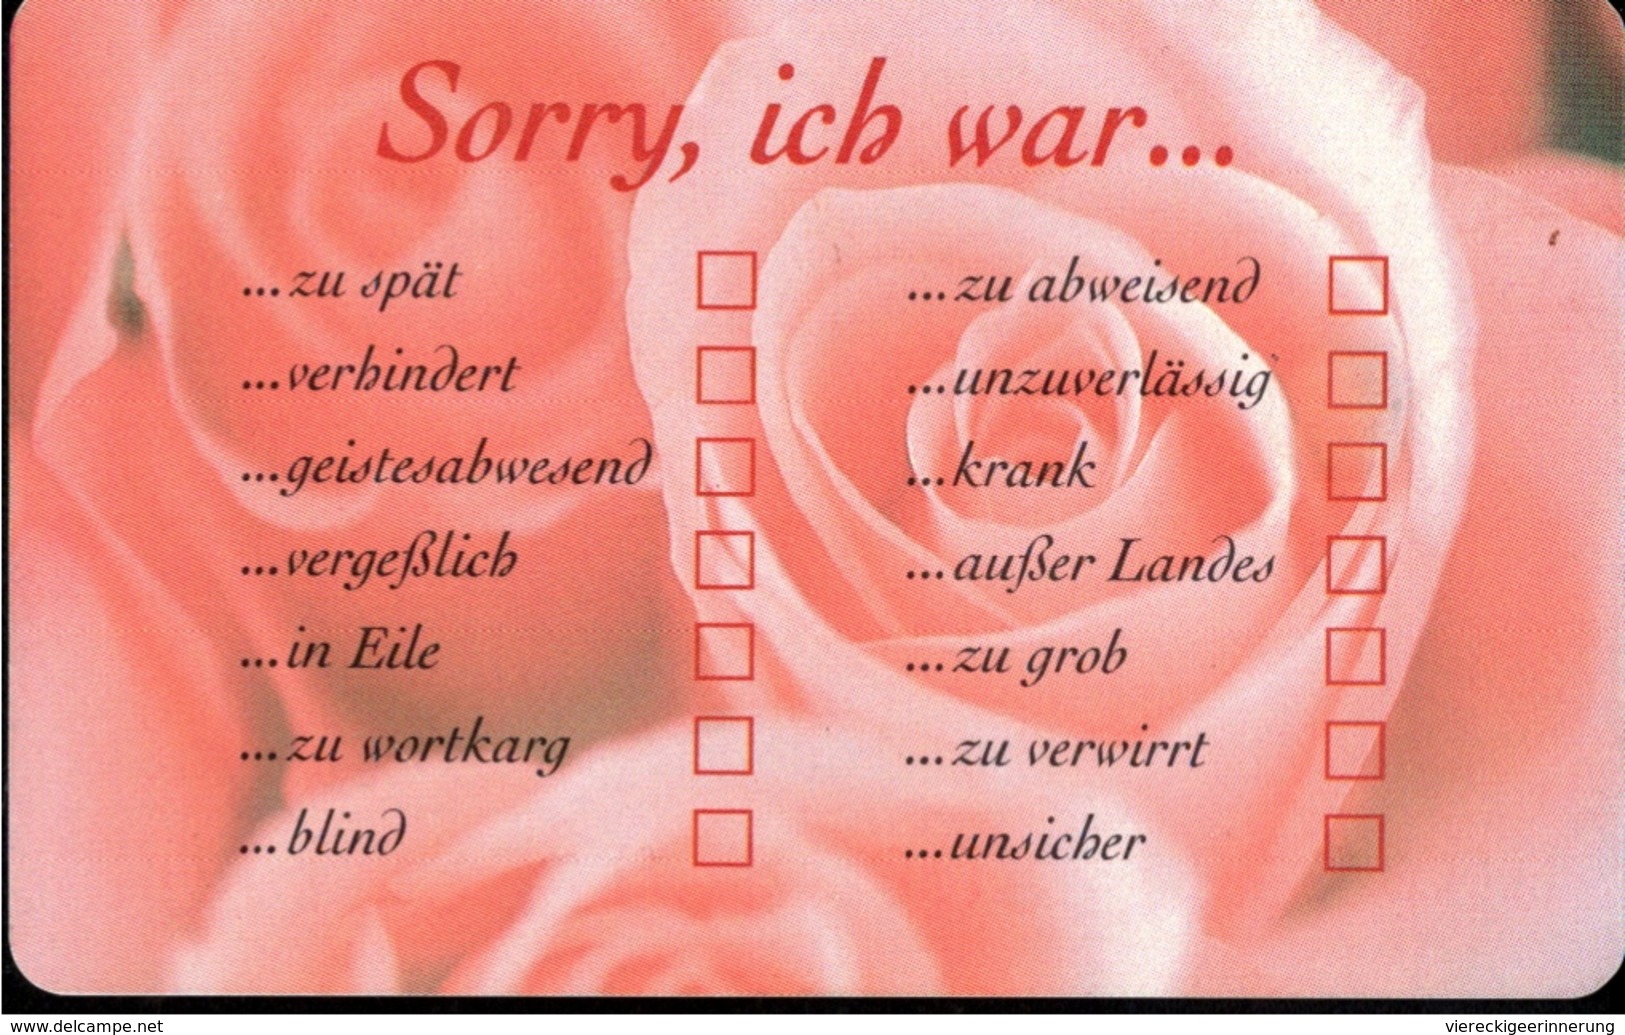 ! Telefonkarte, Telecarte, Phonecard, 1999, P07, Auflage 500000, Telekom Rose, Sorry, Germany - P & PD-Reeksen : Loket Van D. Telekom